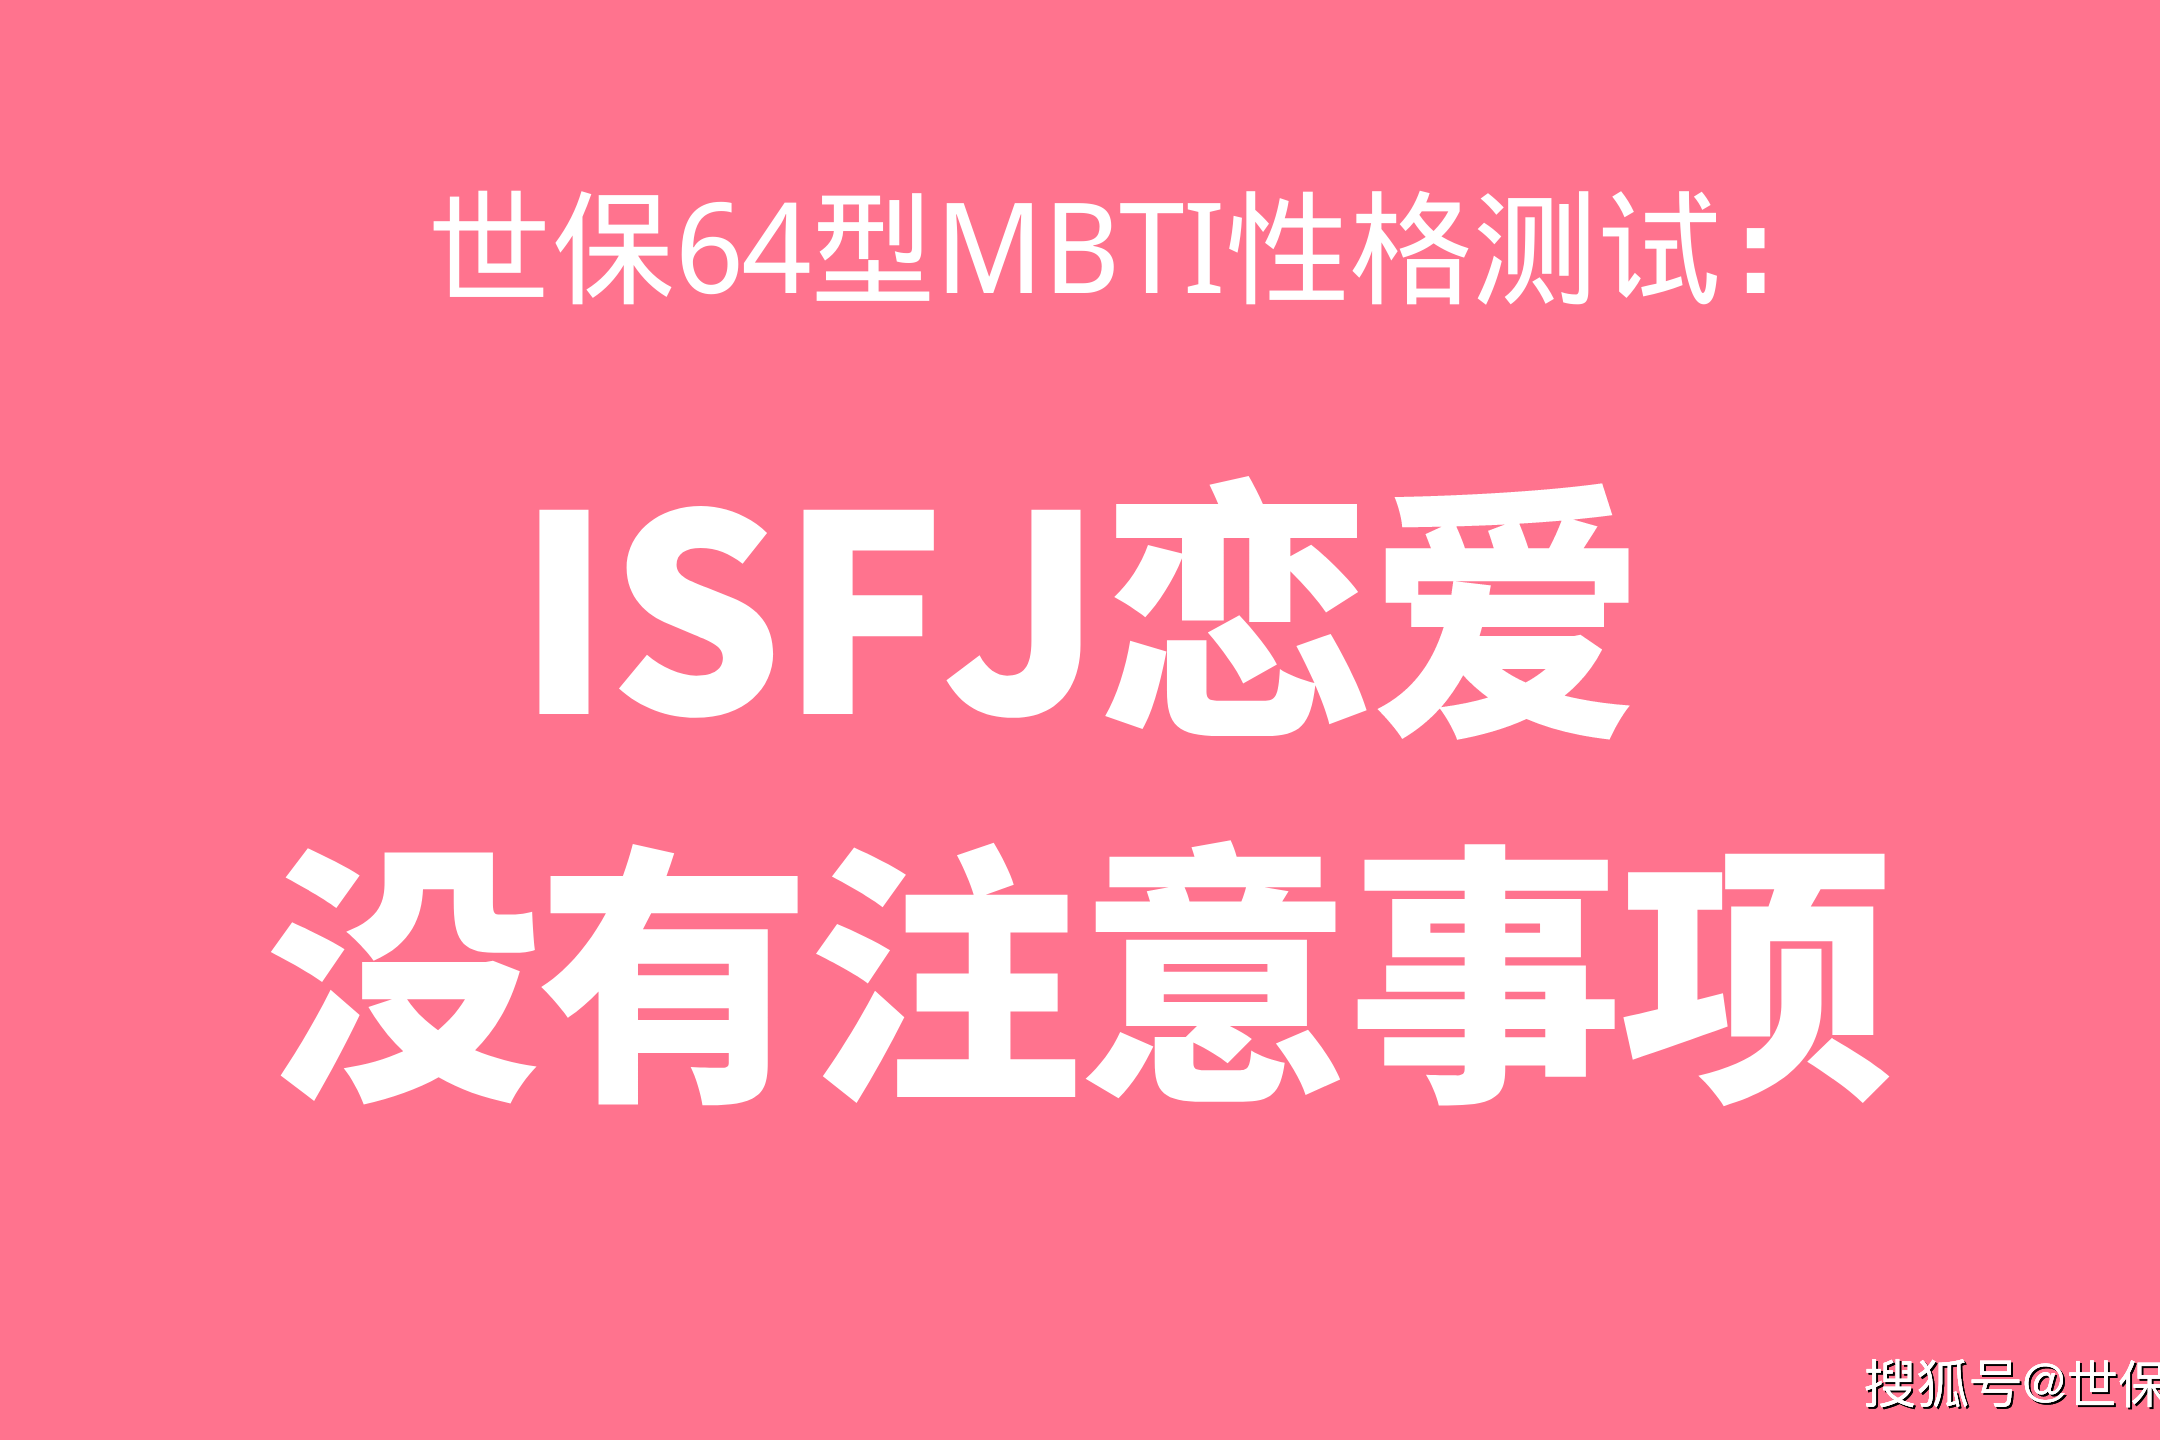 世保64型mbti性格测试 Isfj恋爱没有注意事项 信任 强势 问题